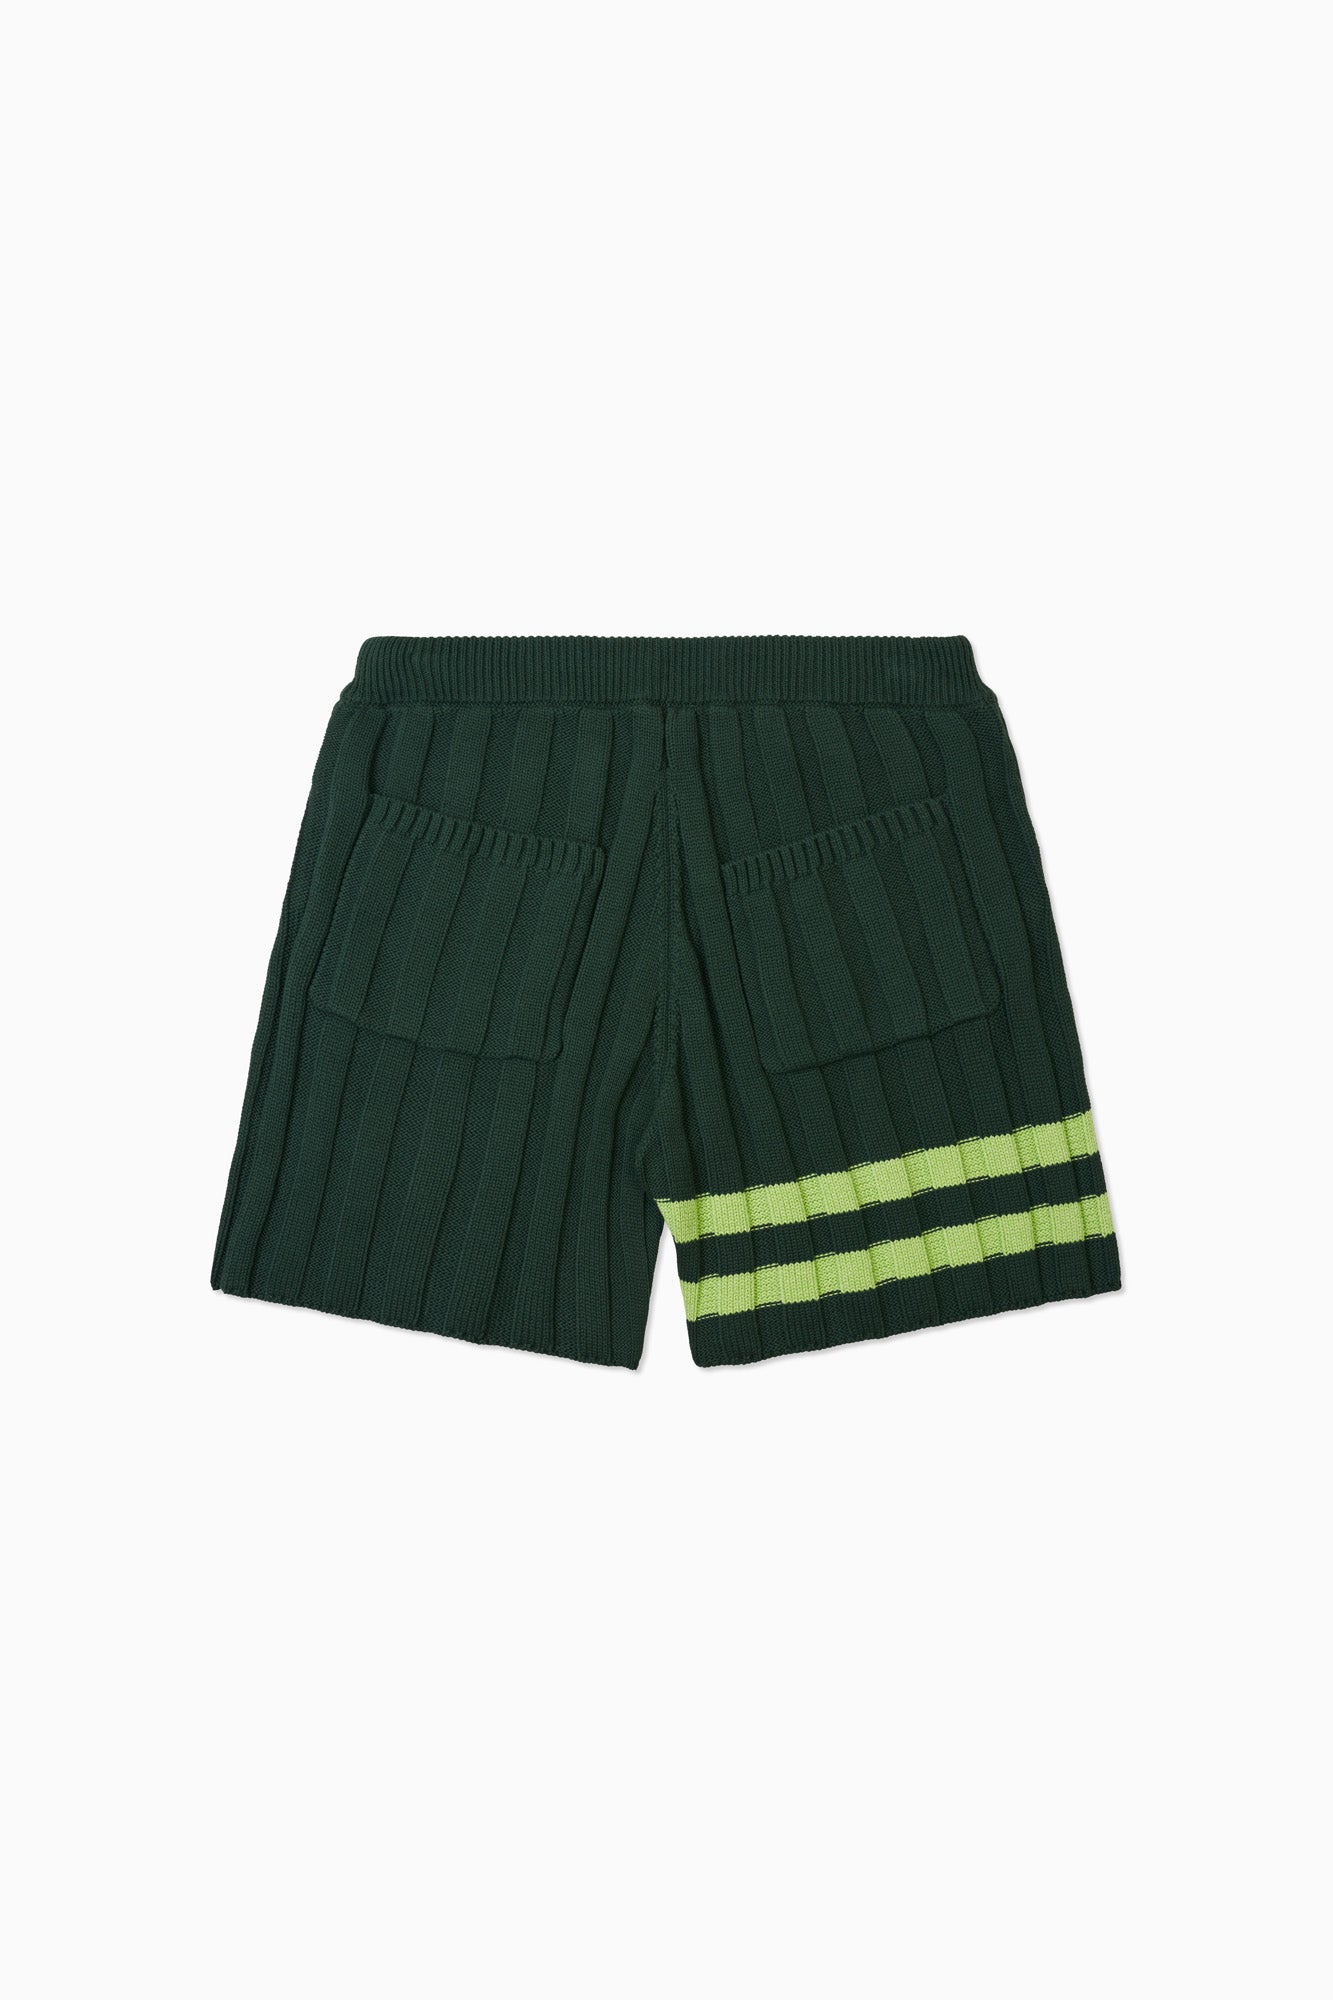 Sport Knit Short - Forest Green